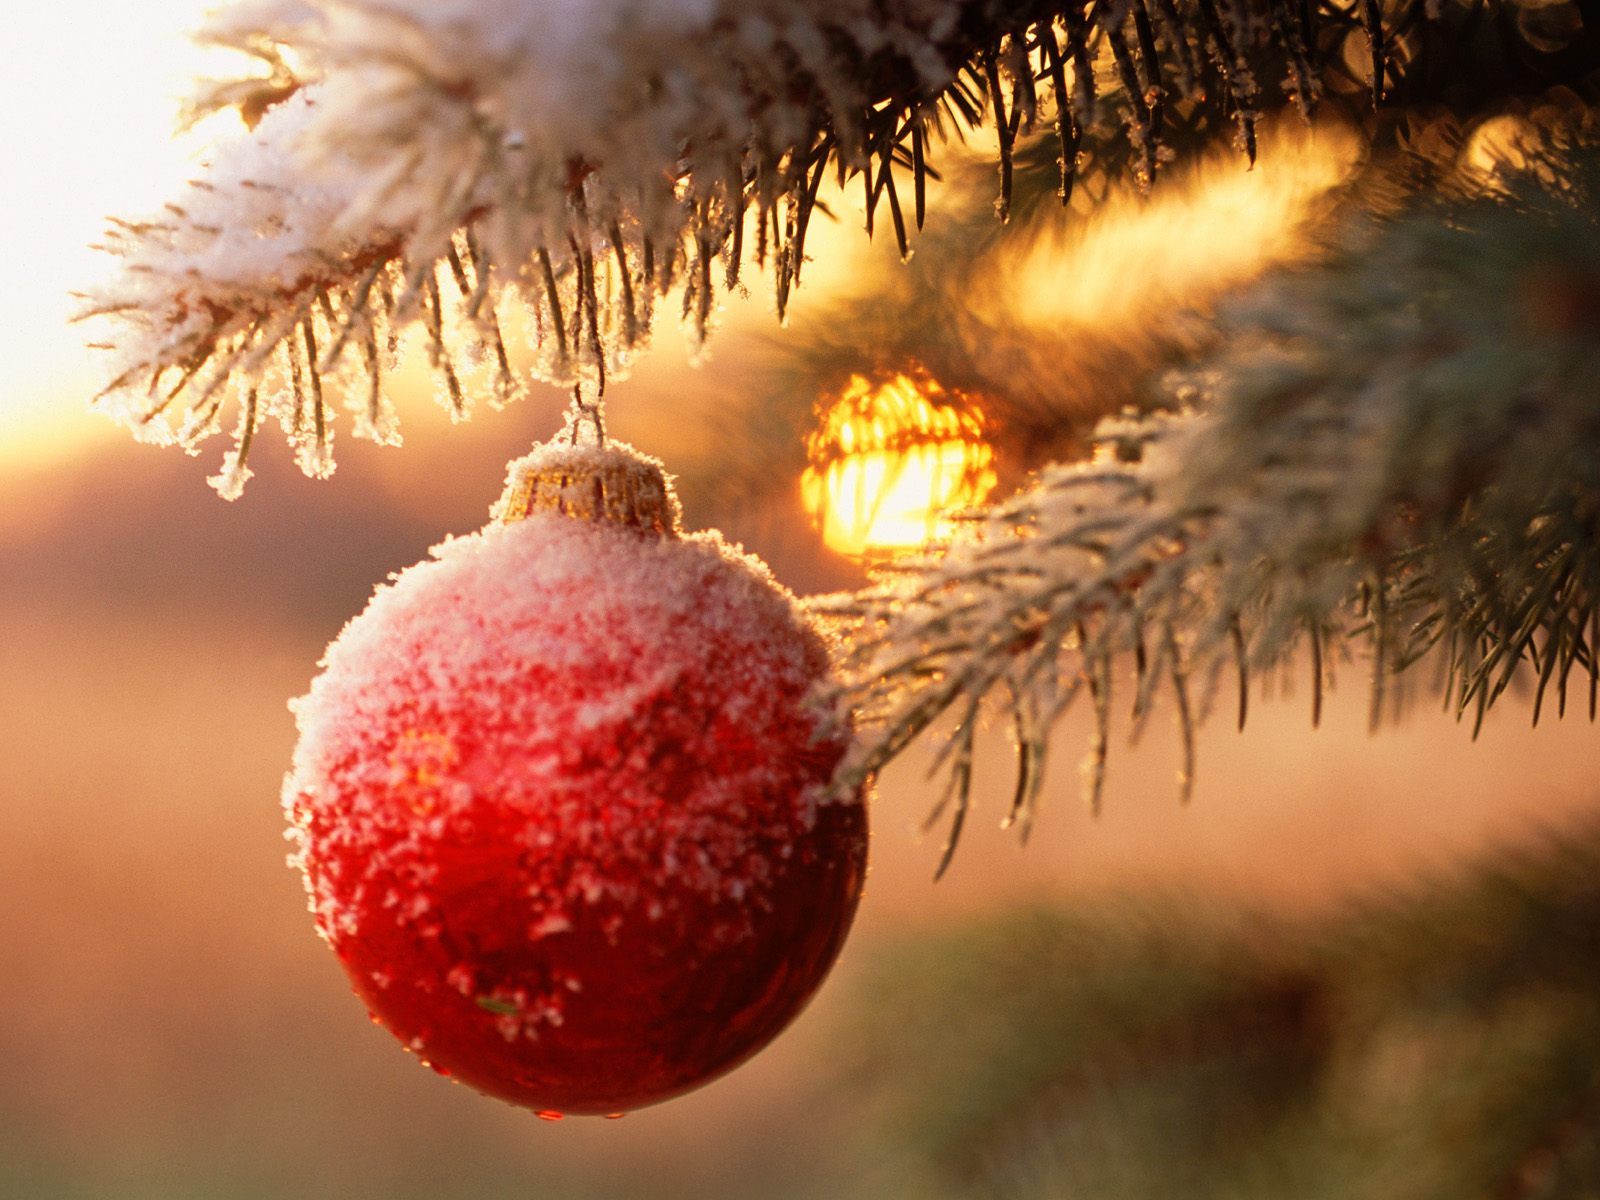 Скачать обои бесплатно Рождество (Christmas Xmas), Праздники, Новый Год (New Year) картинка на рабочий стол ПК